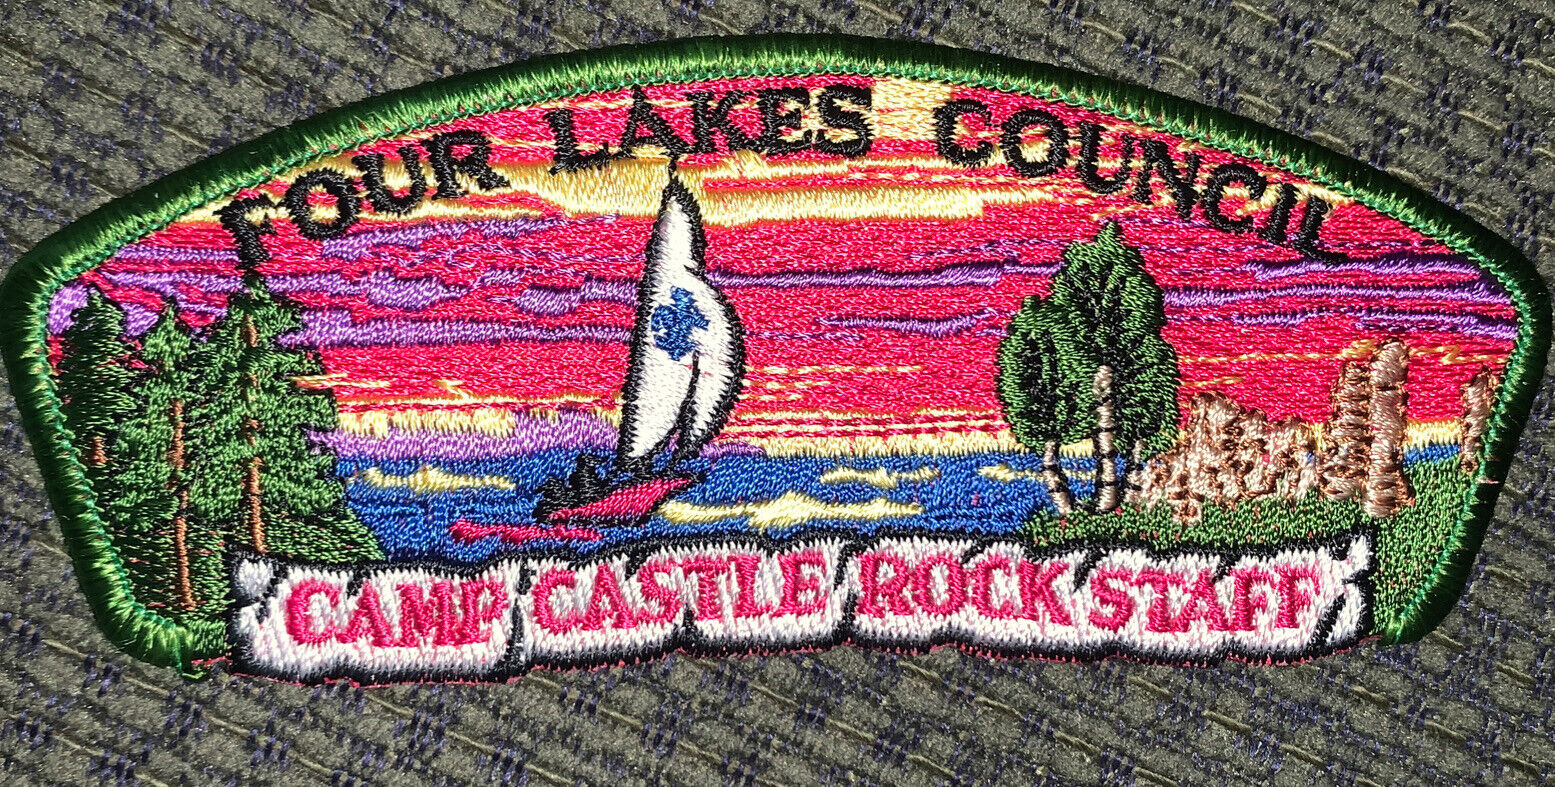 Mint CSP Four Lakes Council Camp Castle Rock Staff S-UA